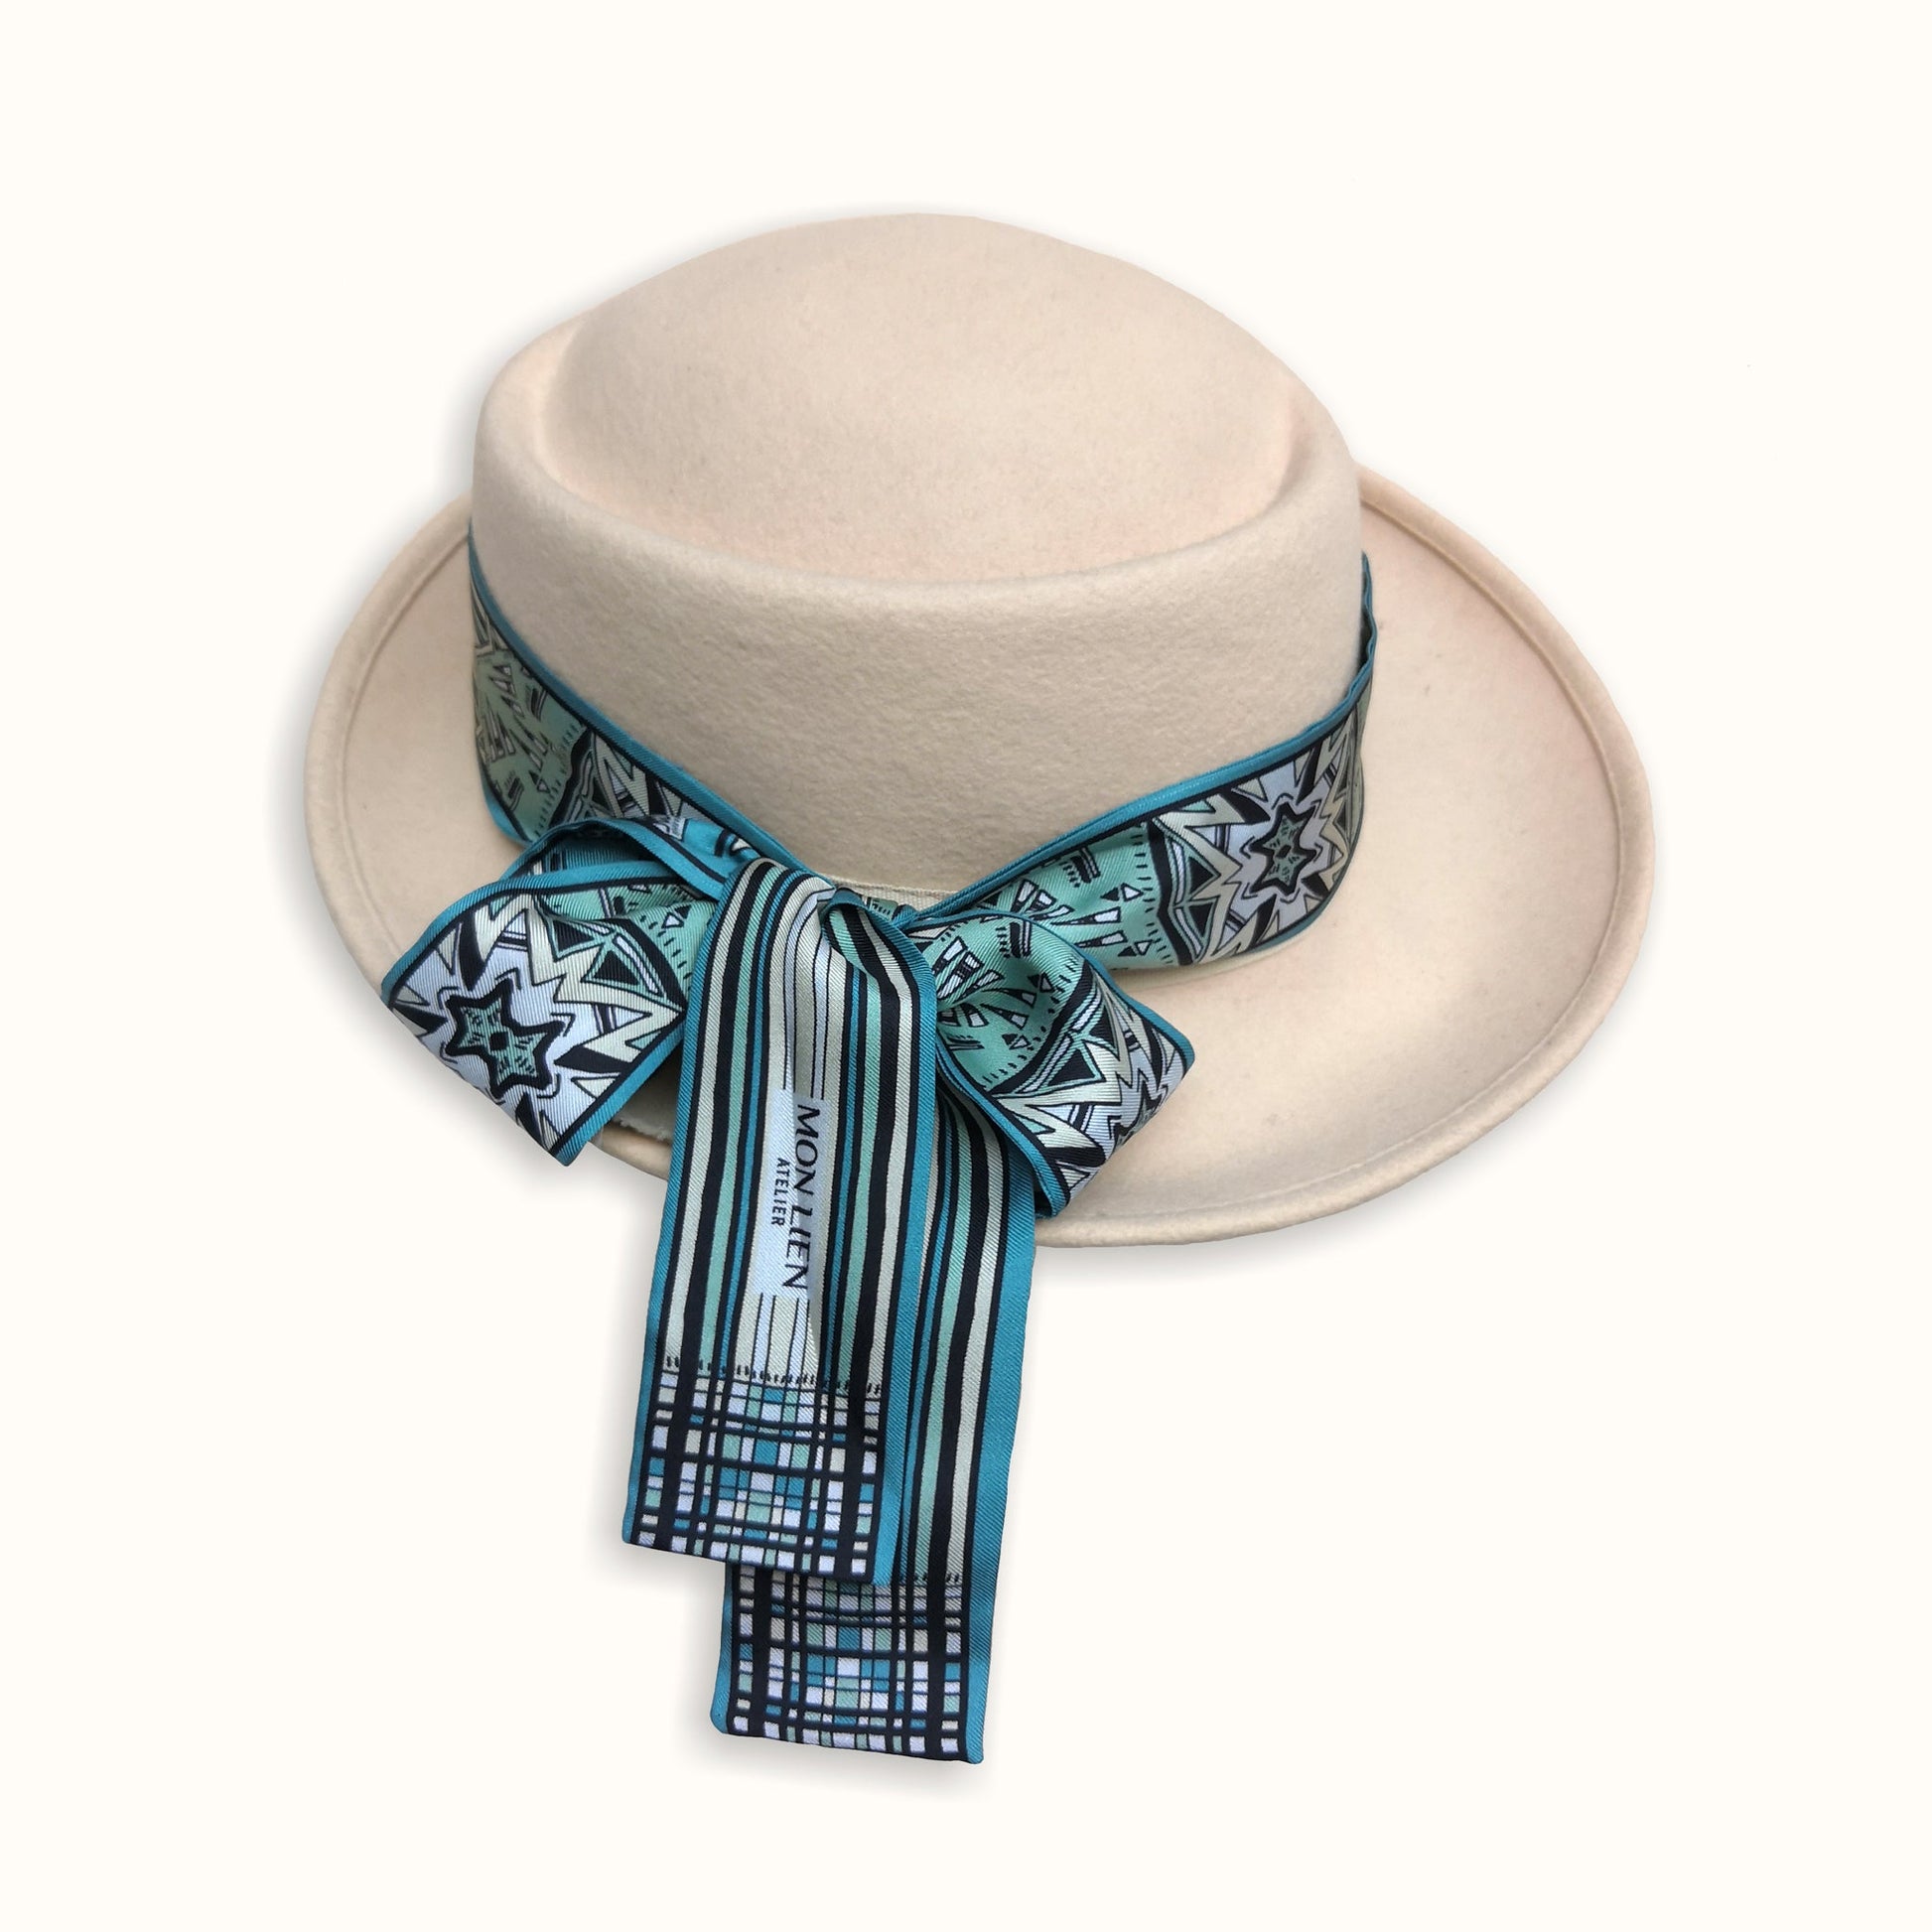 bandeau di seta arrotolato intorno al capello con fiocco e disegno con elementi manuali ideale per cerimonie